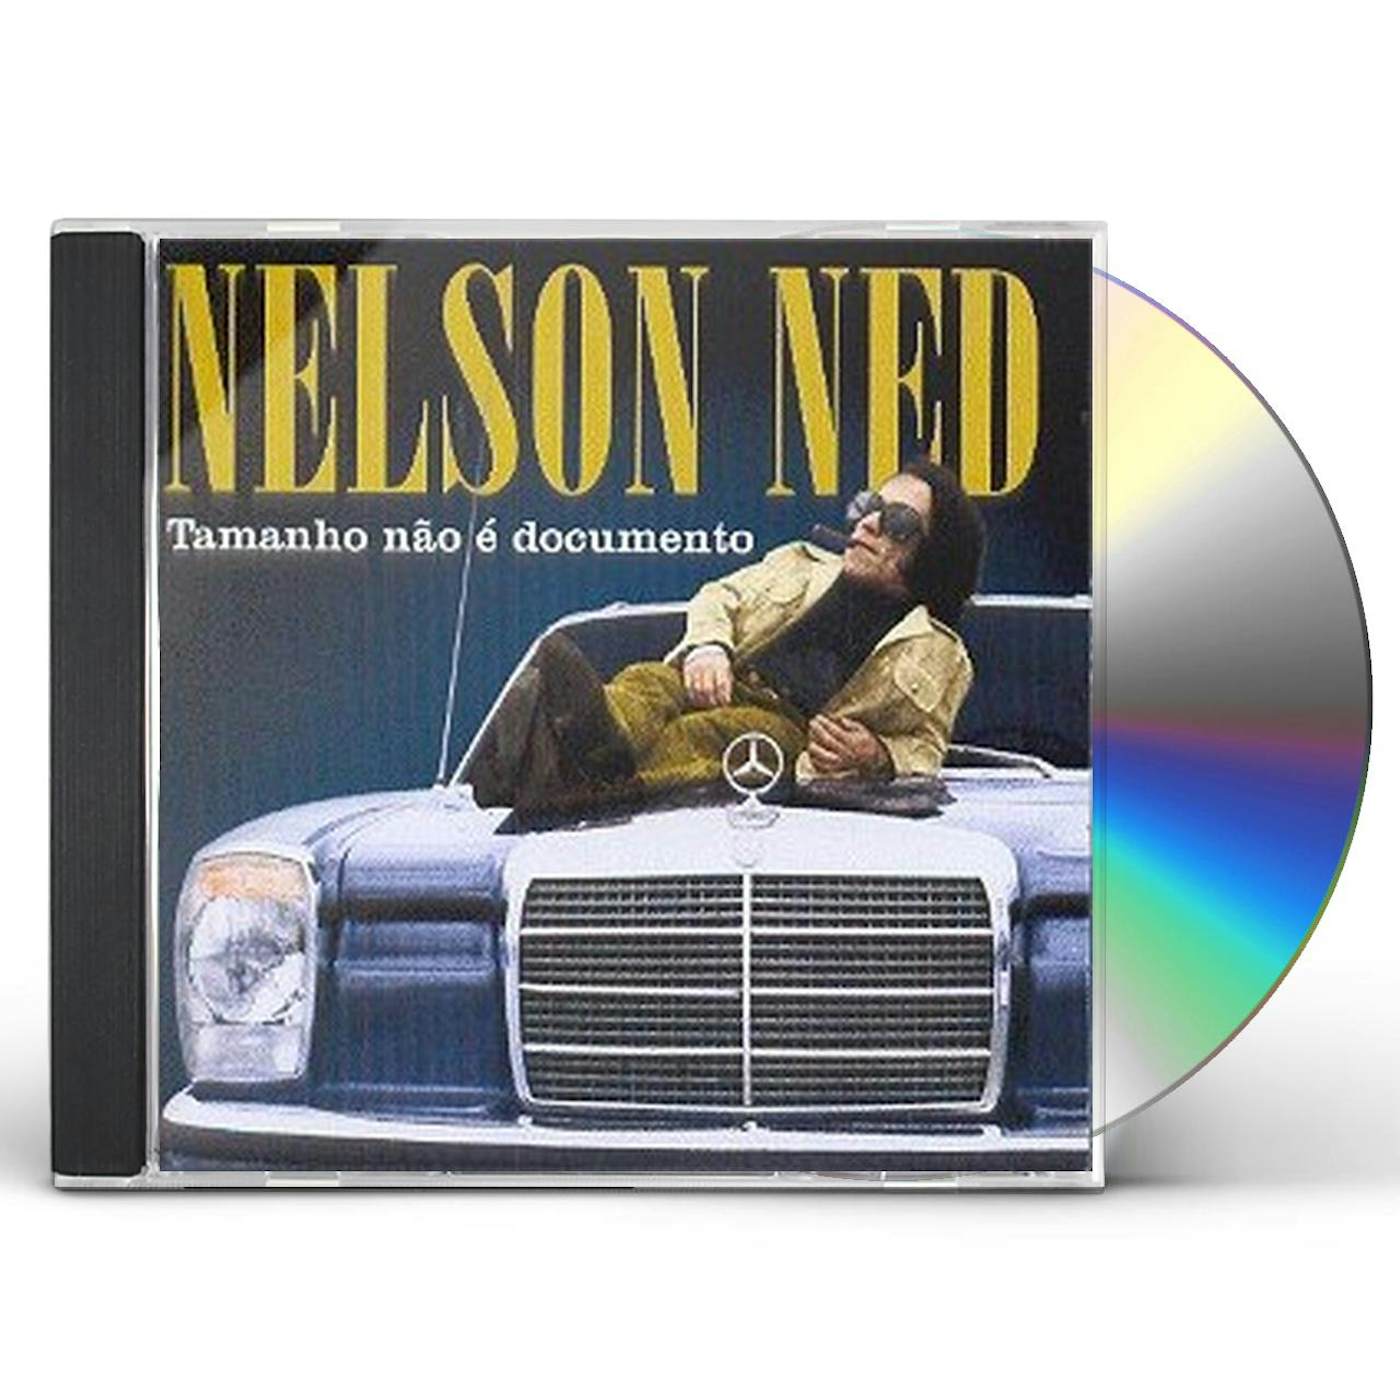 Nelson Ned TAMANHO NAO E DOCUMENTO CD